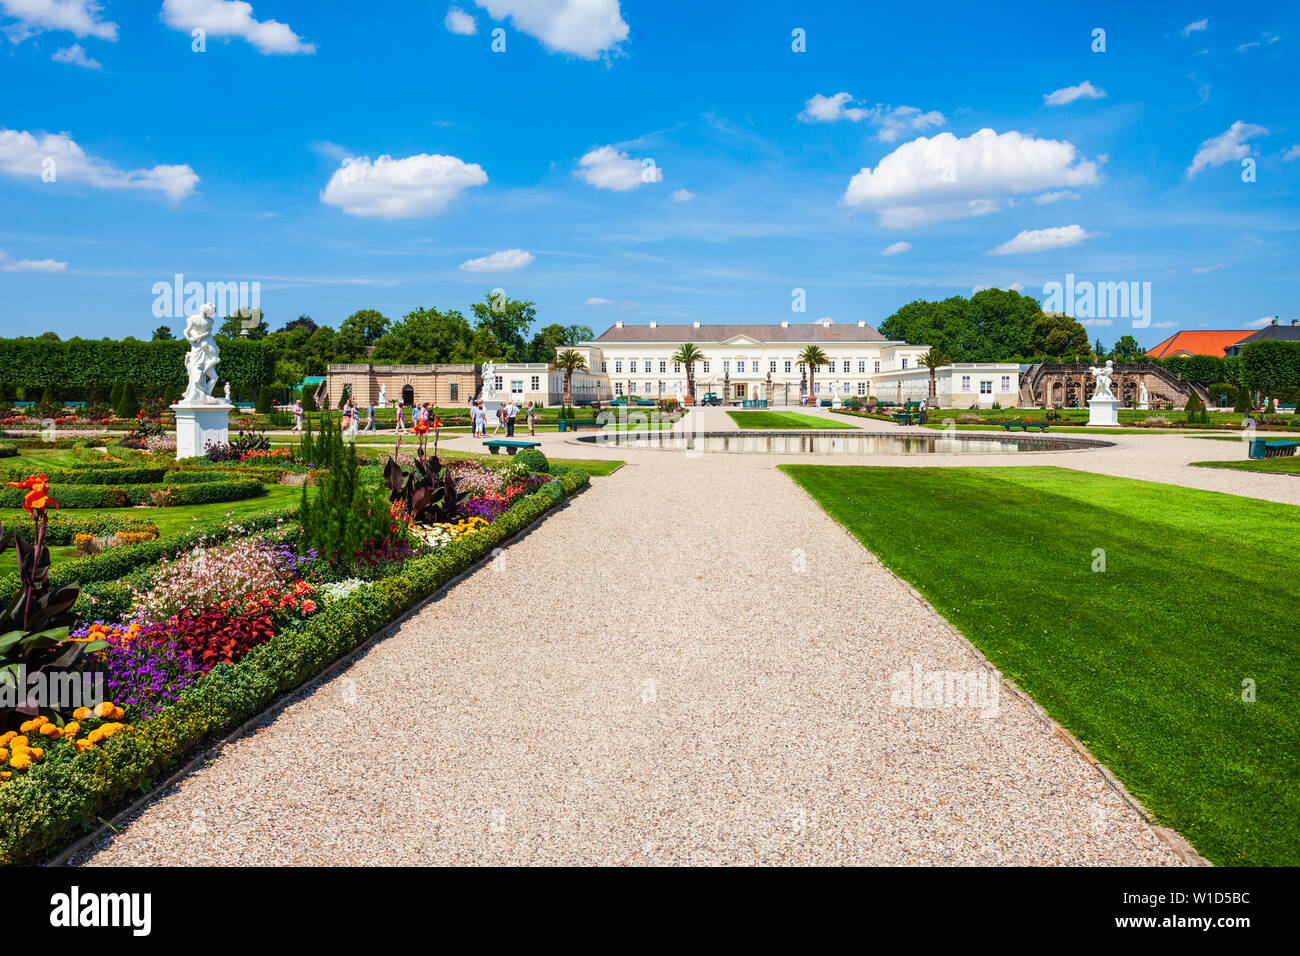 HANNOVER, Germania - Luglio 05, 2018: Herrenhausen Palace situato in Herrenhausen Gardens nella città di Hannover, Germania Foto Stock